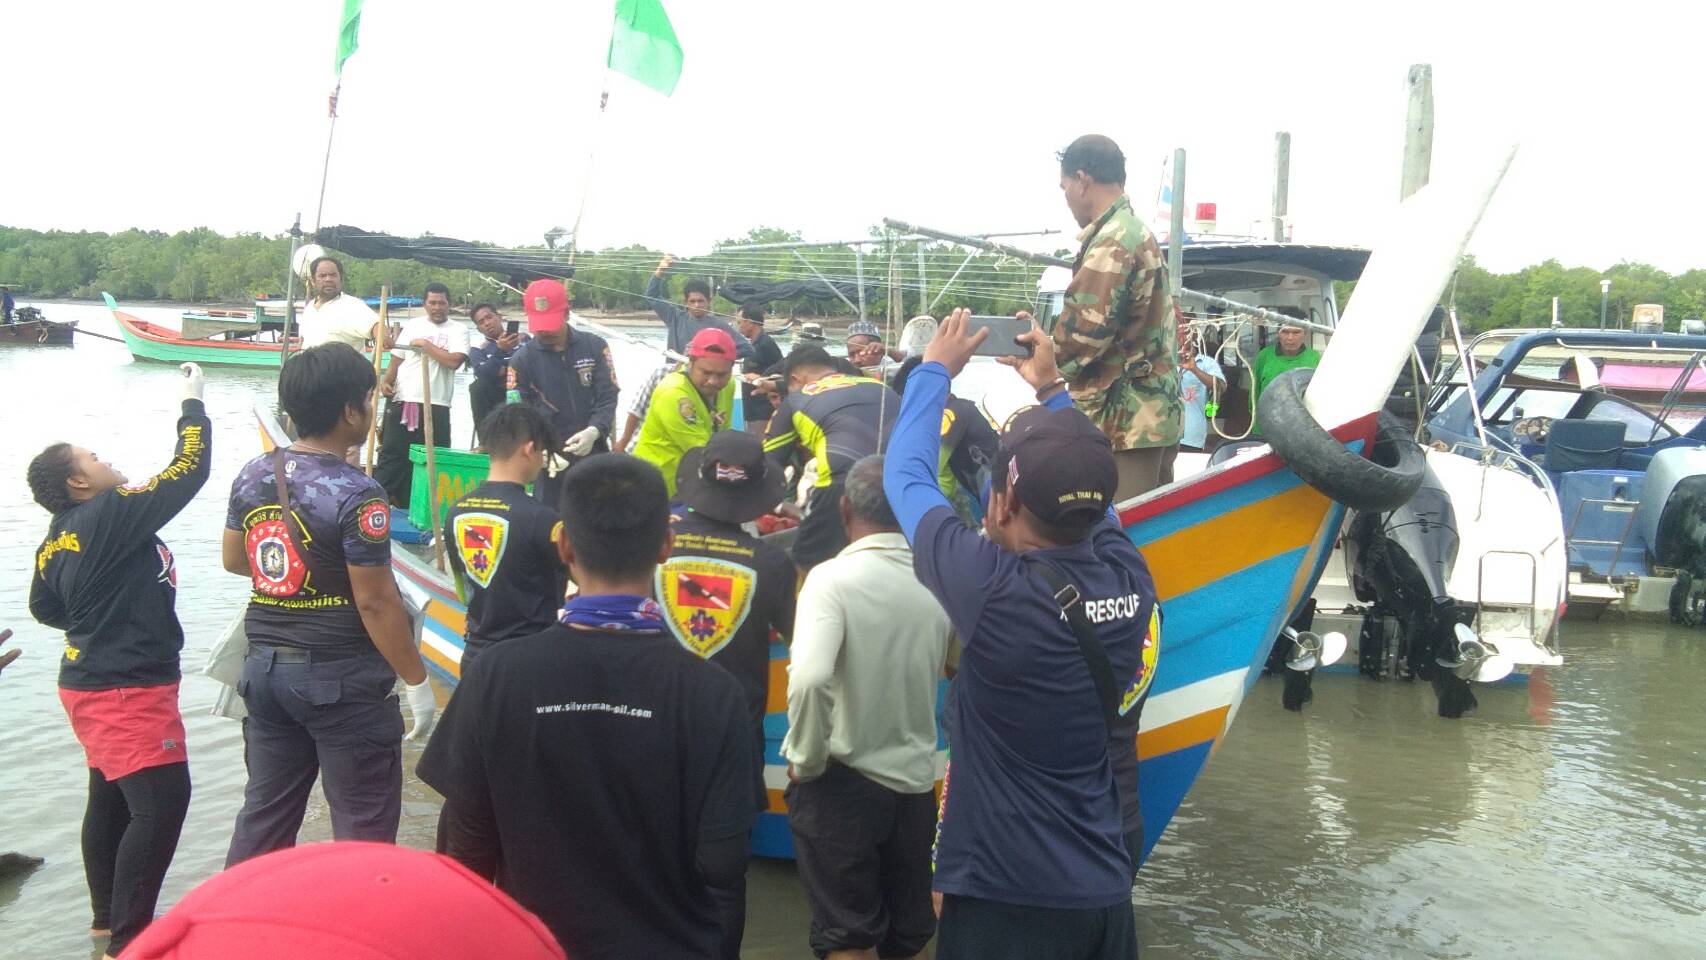 ยุติการค้นหาลูกเรือประมงไทยแล้ว หลังพบศพแถวรอยต่อน่านน้ำไทย-มาเลฯ หลังค้นหามานาน 3 วัน